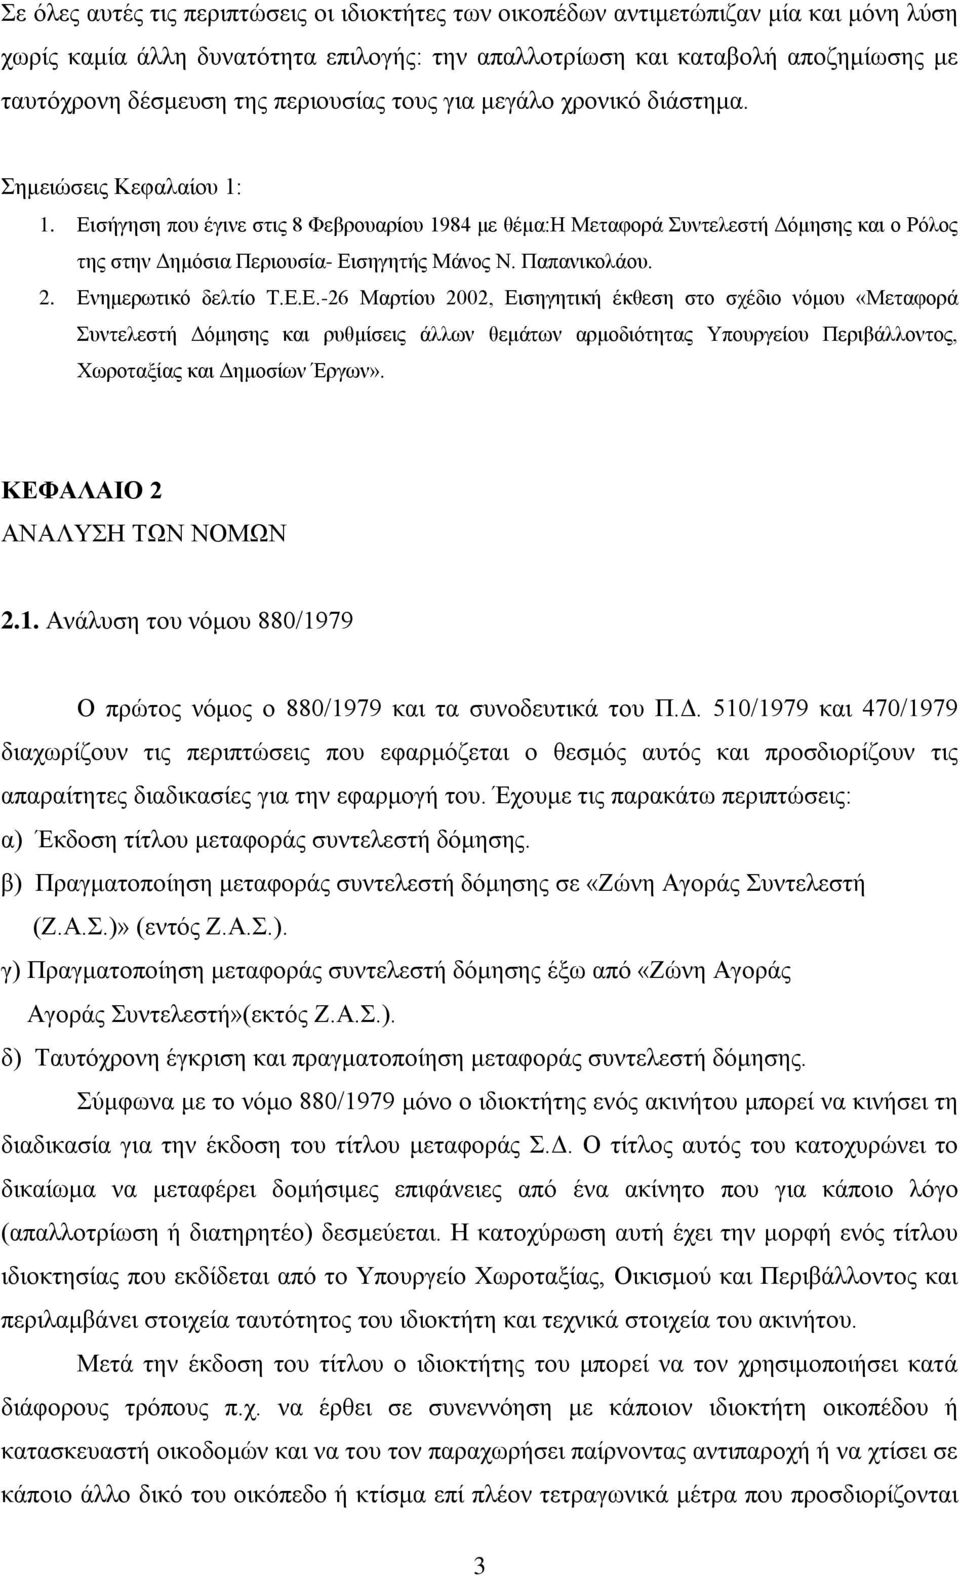 Εισήγηση που έγινε στις 8 Φεβρουαρίου 1984 με θέμα:η Μεταφορά Συντελεστή Δόμησης και ο Ρόλος της στην Δημόσια Περιουσία- Εισηγητής Μάνος Ν. Παπανικολάου. 2. Ενημερωτικό δελτίο Τ.Ε.Ε.-26 Μαρτίου 2002, Εισηγητική έκθεση στο σχέδιο νόμου «Μεταφορά Συντελεστή Δόμησης και ρυθμίσεις άλλων θεμάτων αρμοδιότητας Υπουργείου Περιβάλλοντος, Χωροταξίας και Δημοσίων Έργων».